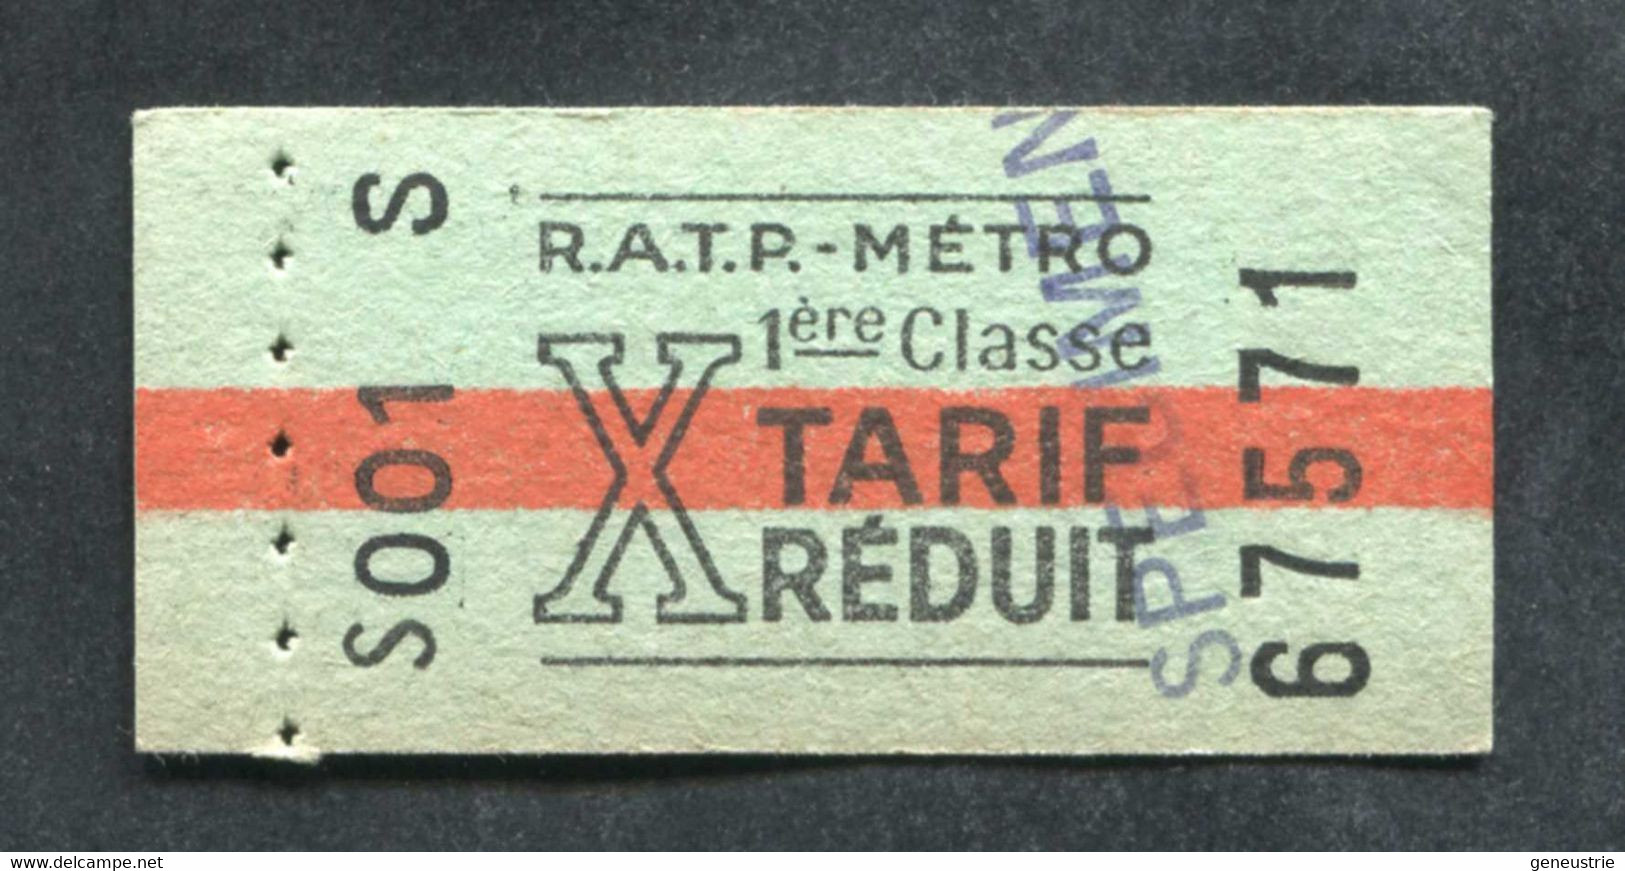 Neuf ! Ticket De Métro Tarif Réduit (issu De Carnet) 1ère Cl "SPECIMEN" Période 1960/1966 - Métropolitain Paris RATP - Europa